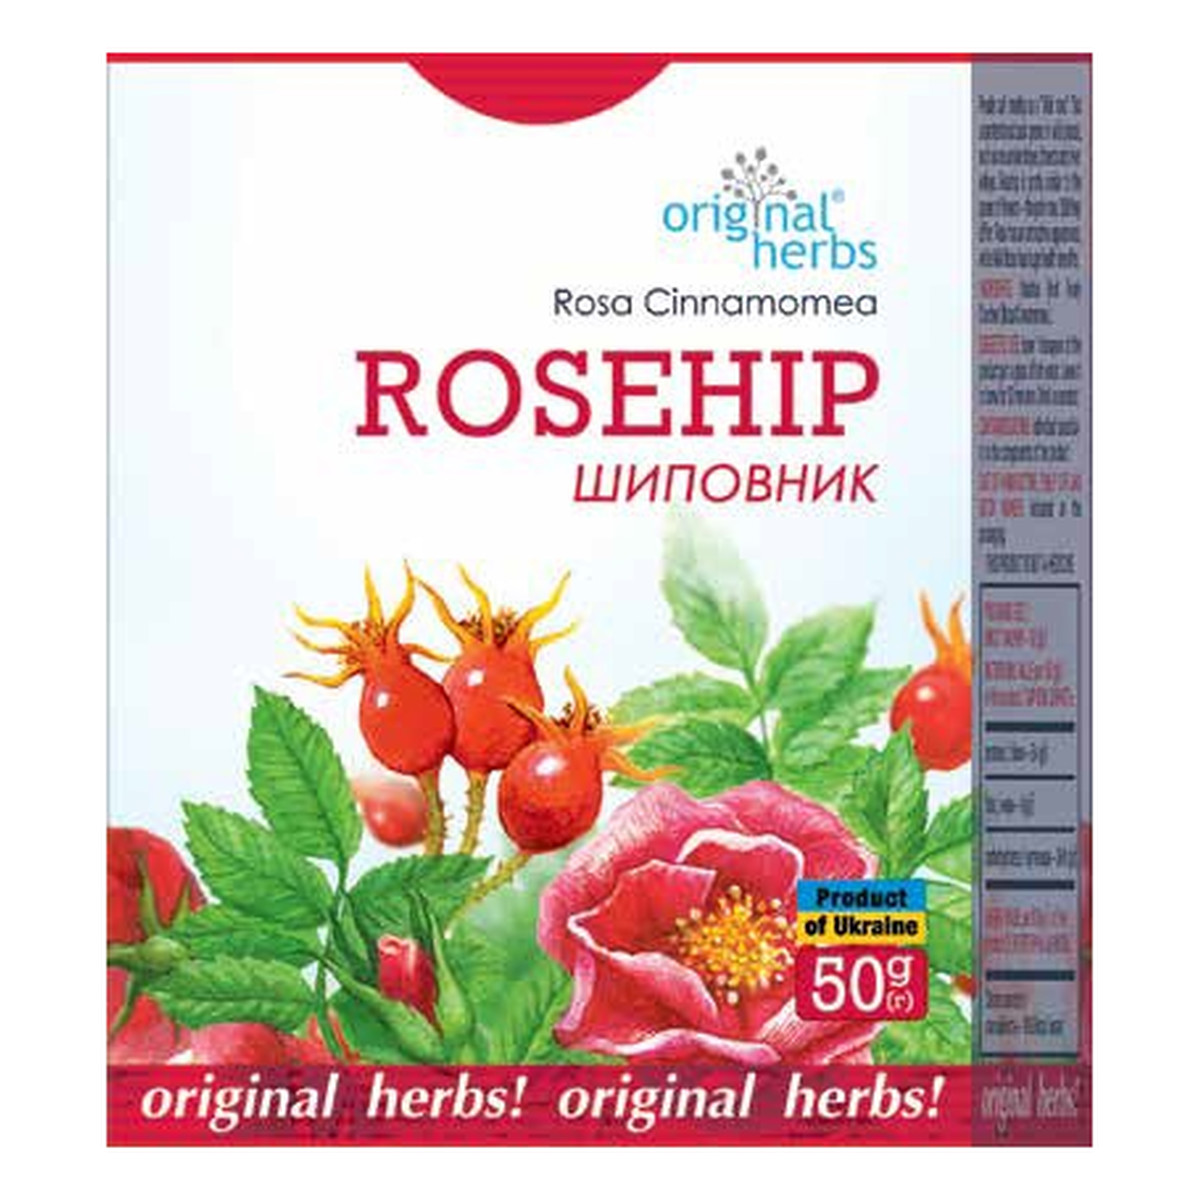 Original Herbs Herbatka ziołowa owoce dzikiej róży (w proszku) 50g